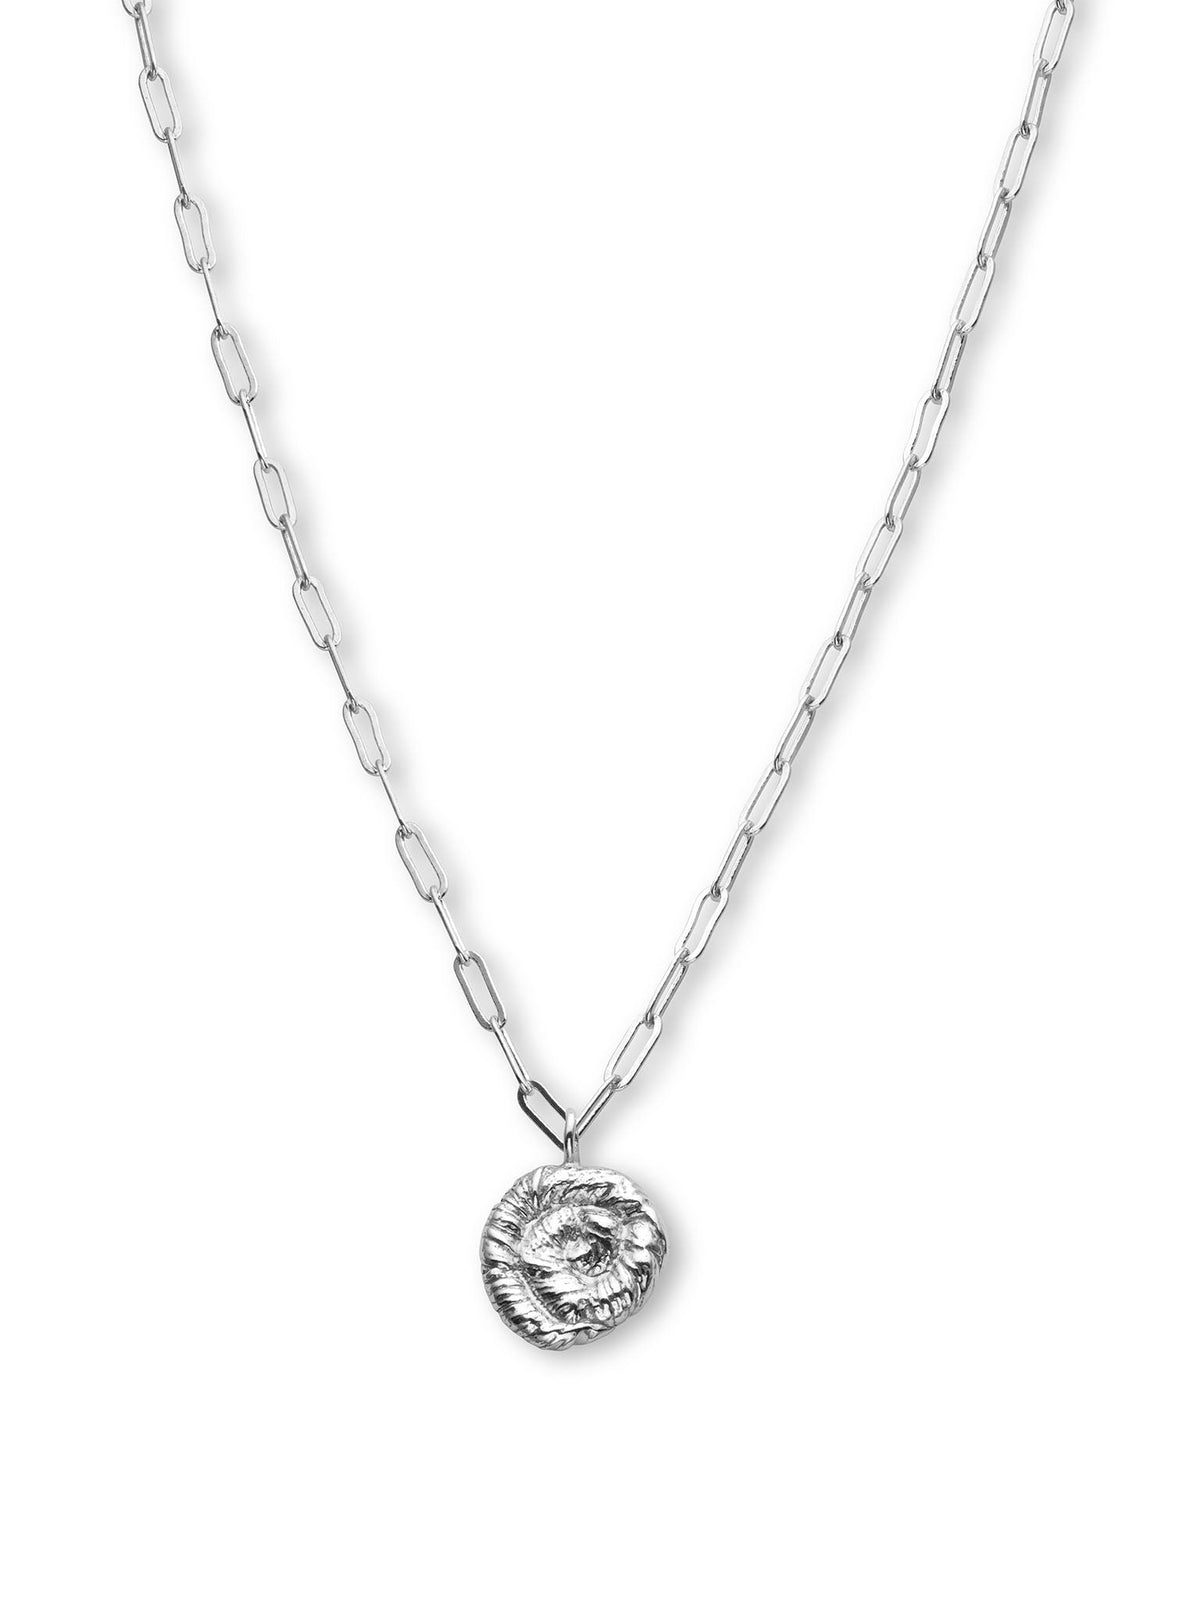 Nautilus Pendant Necklace Silver